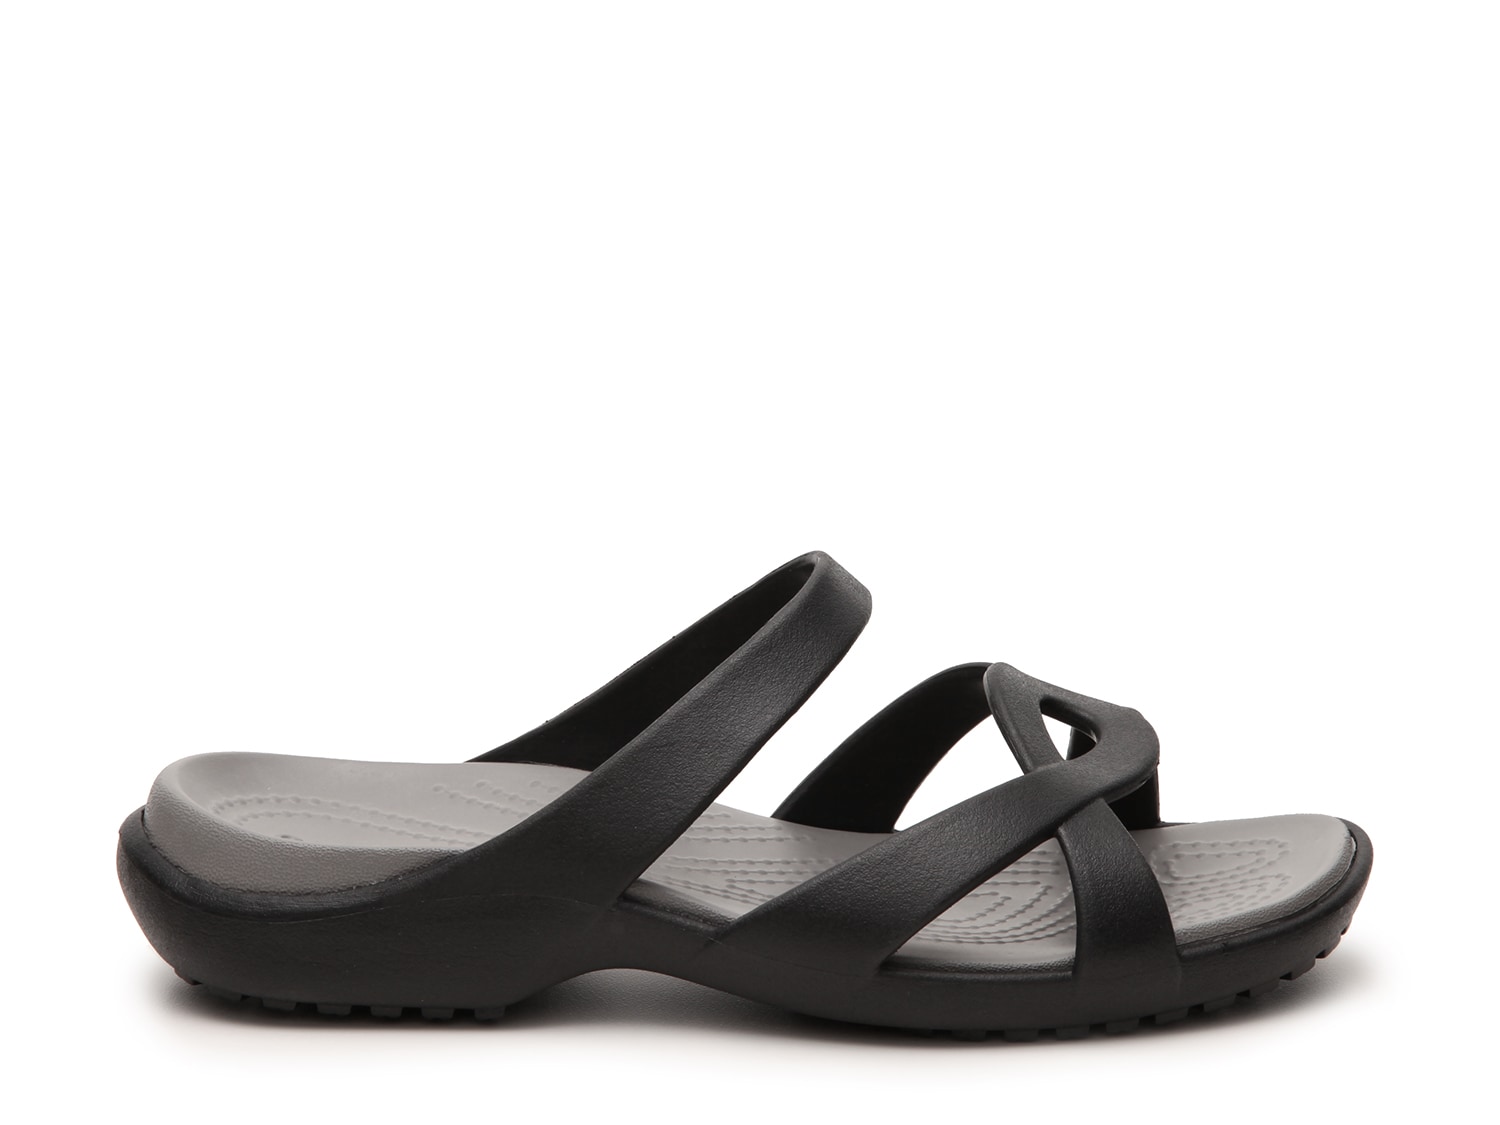 crocs meleen women's slide sandals